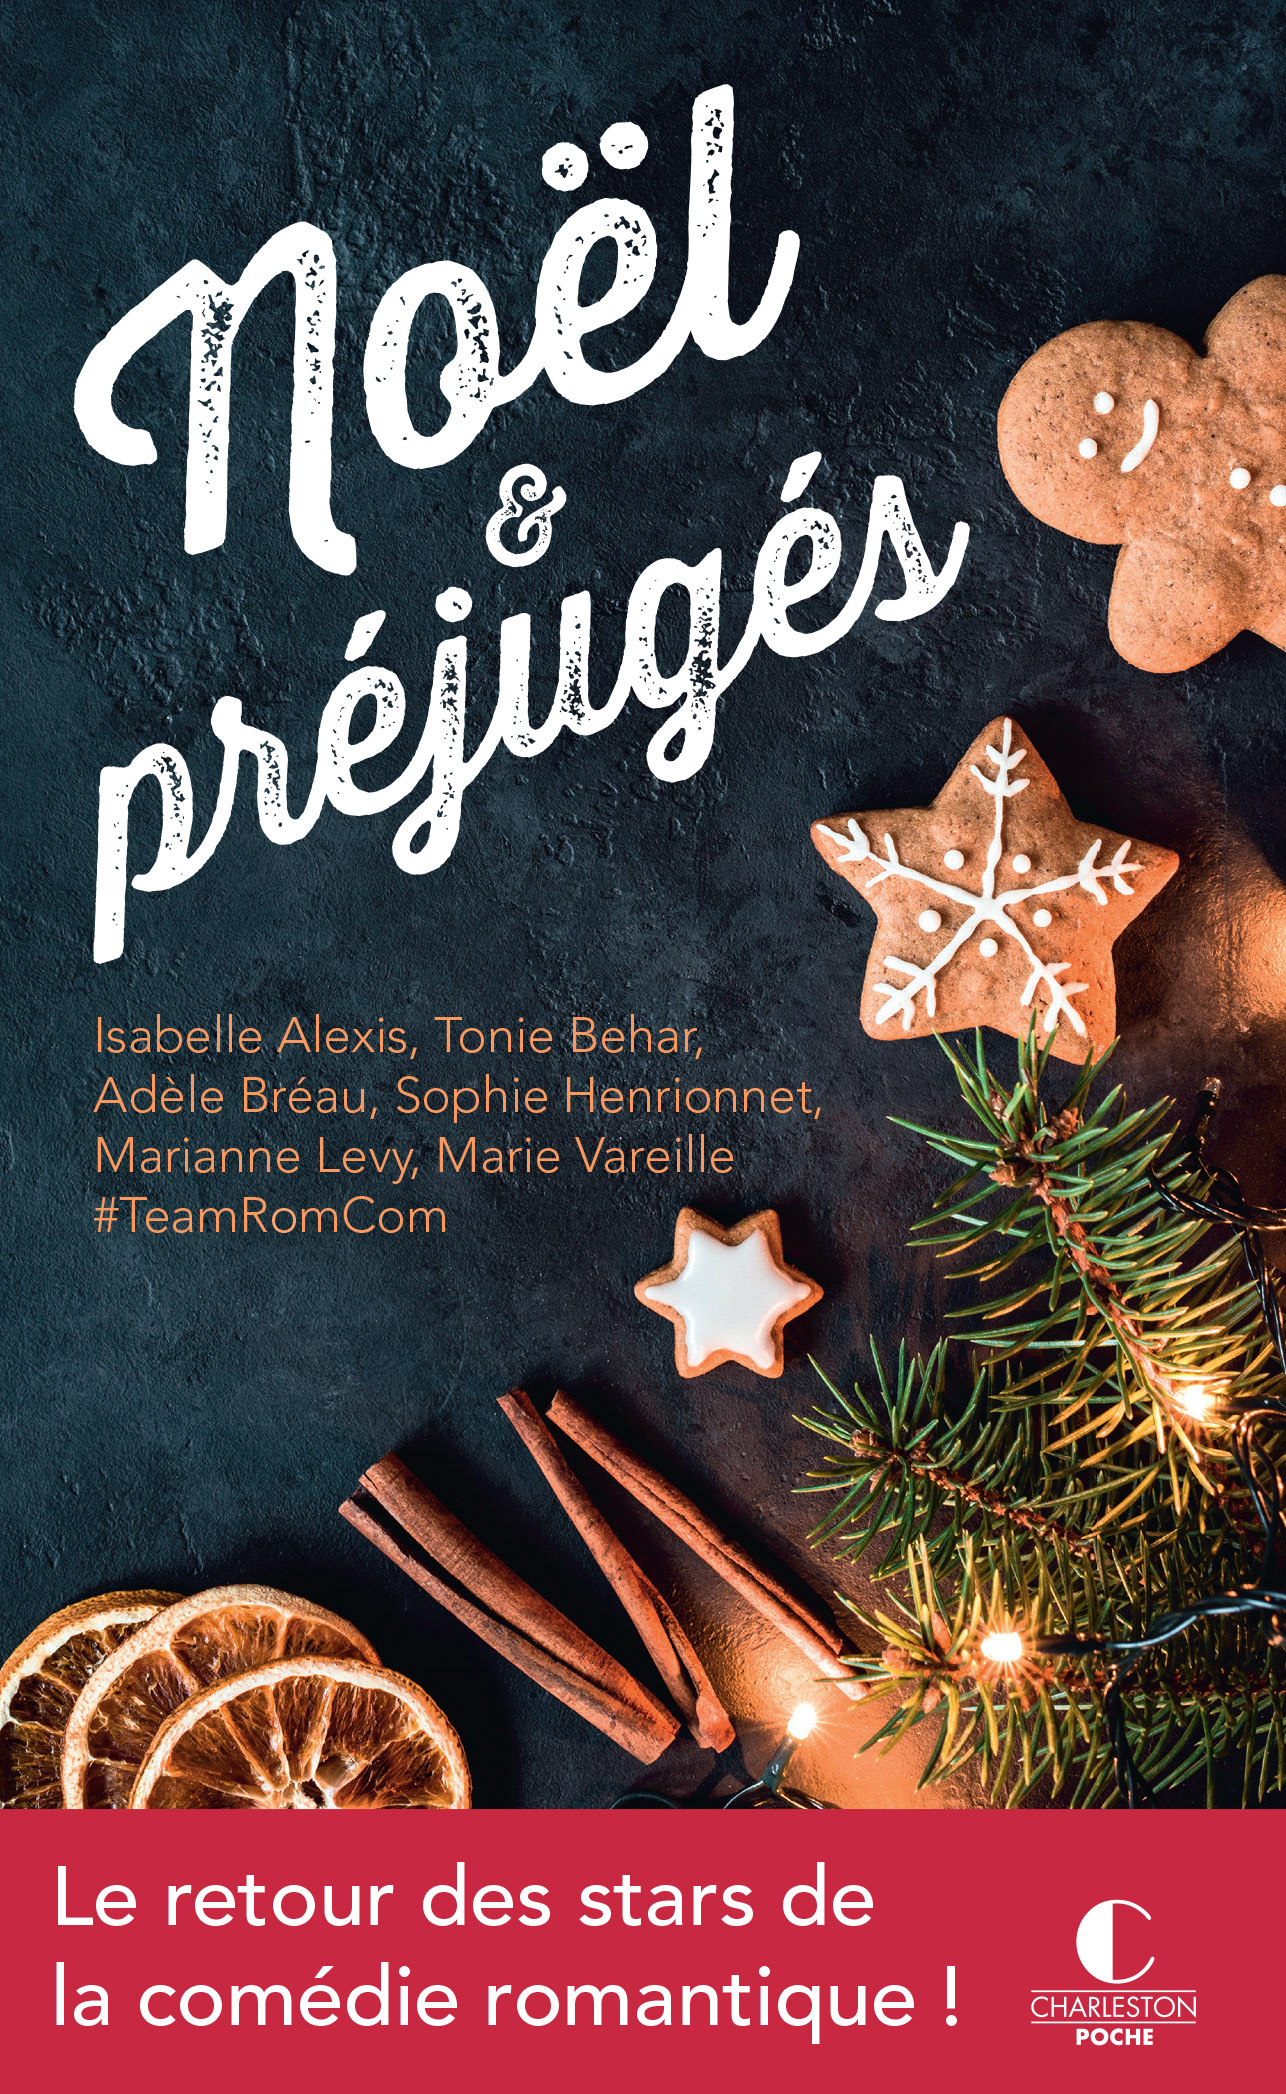 Noël et préjugés: histoires drôles et romantiques pour un Noël magique